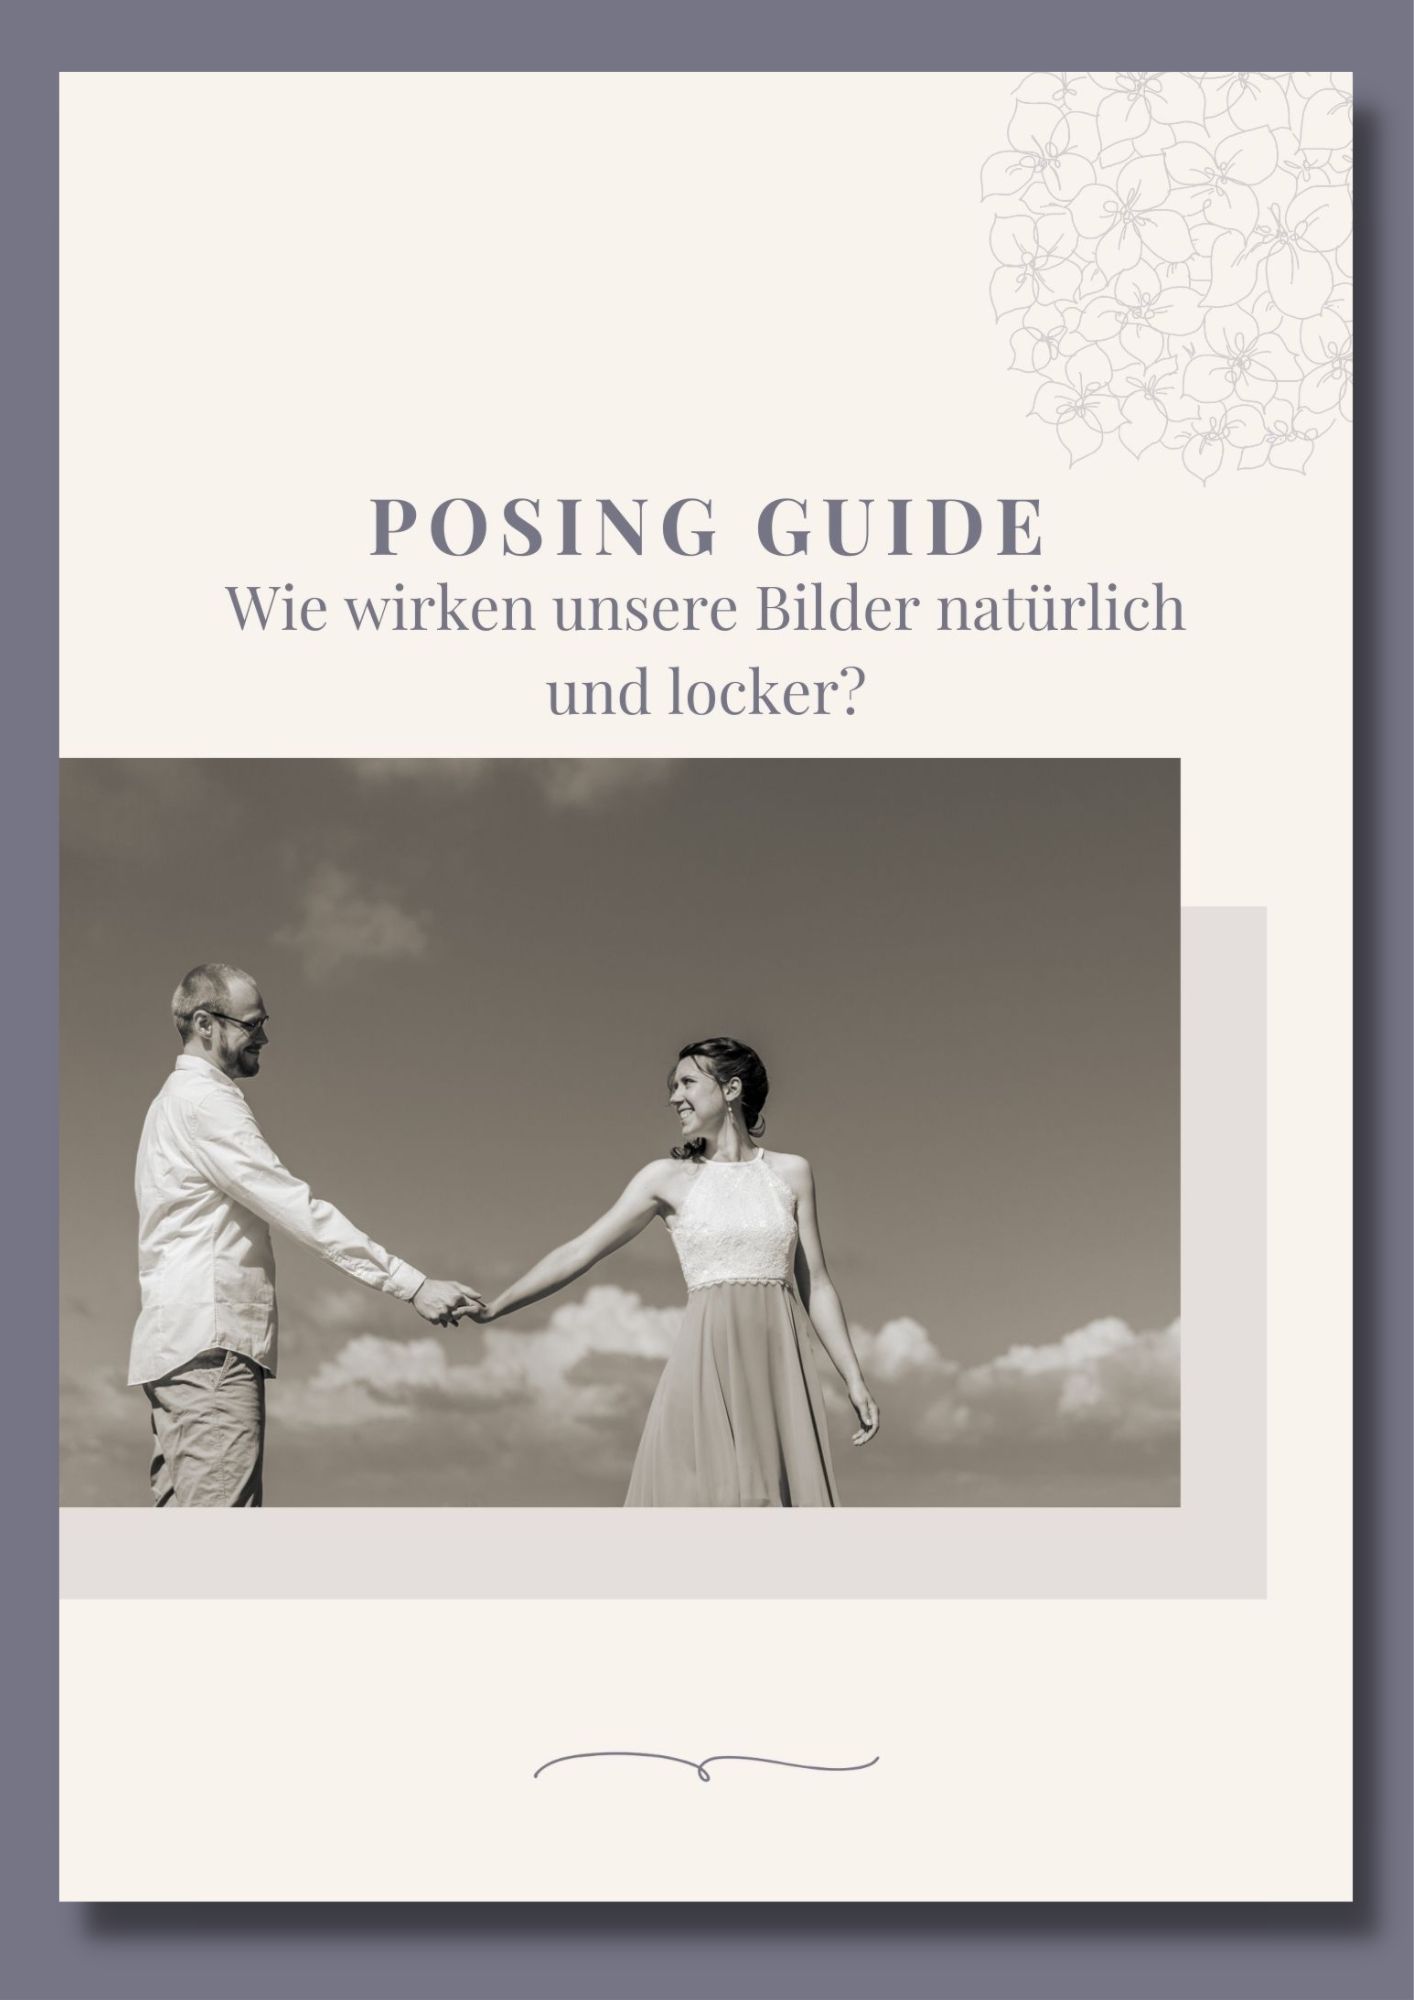 Posing Guide für ungestellte Paarfotos Rostock